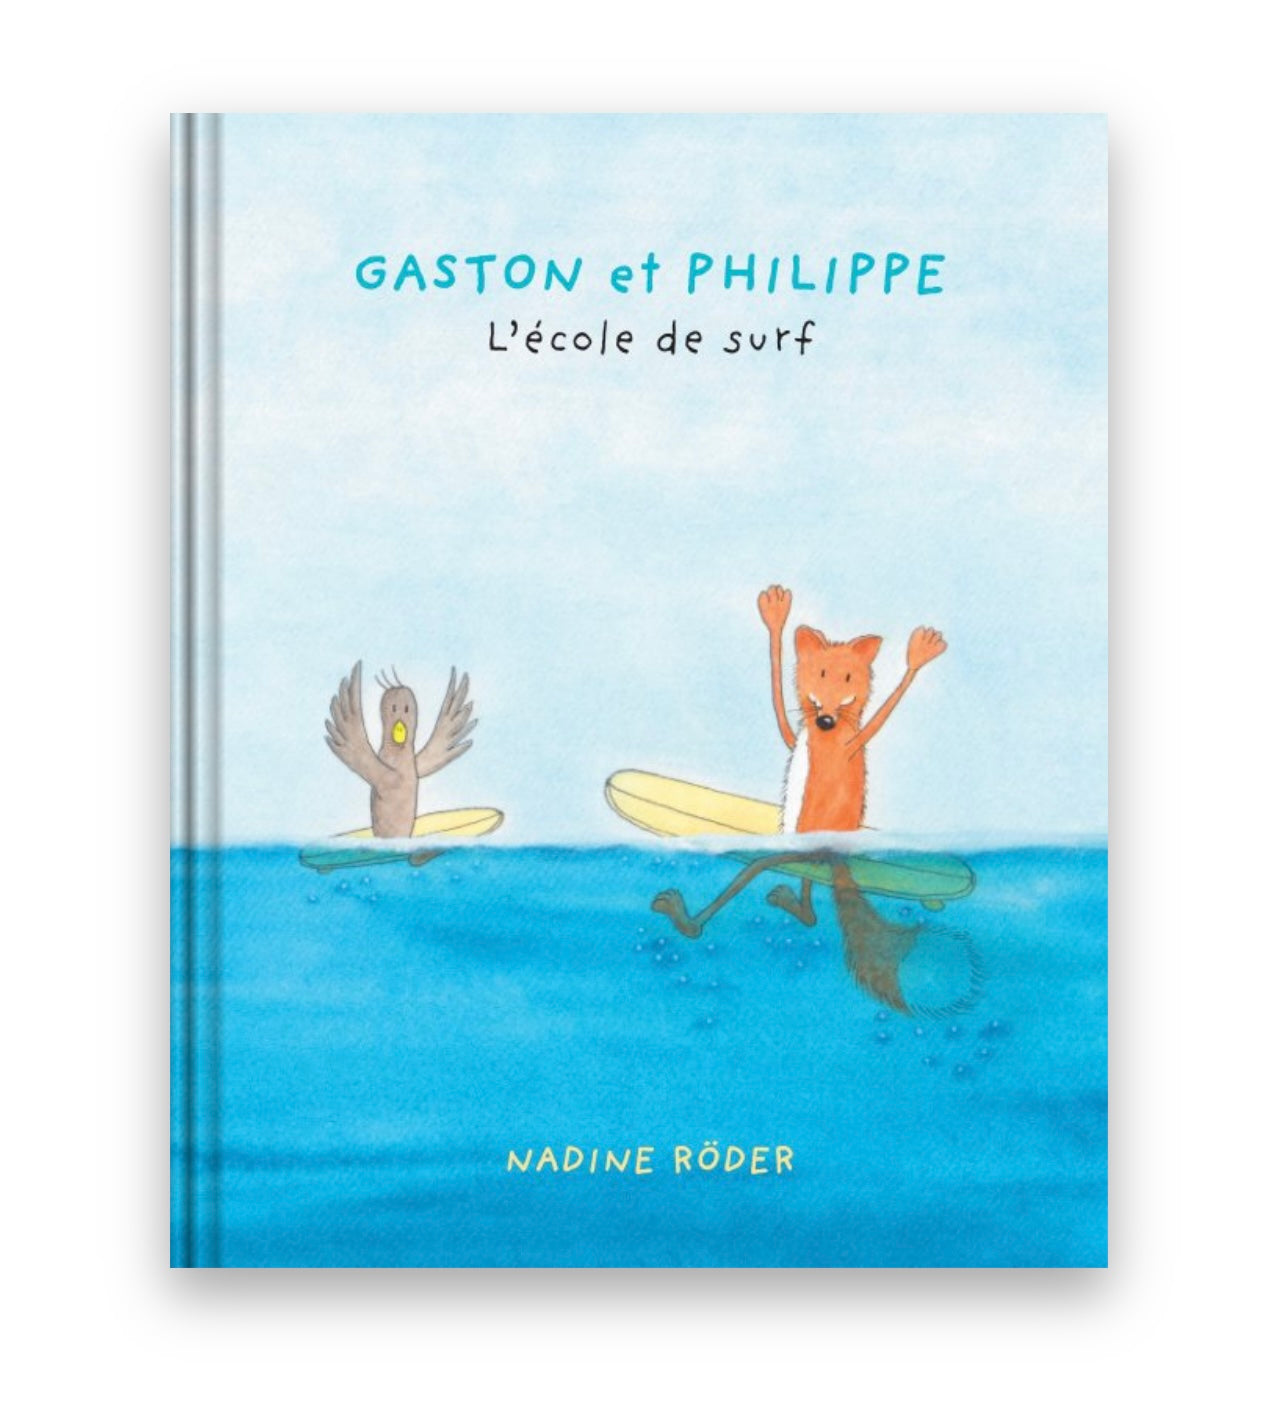 Book 2 "GASTON et PHILIPPE - L’école de surf"